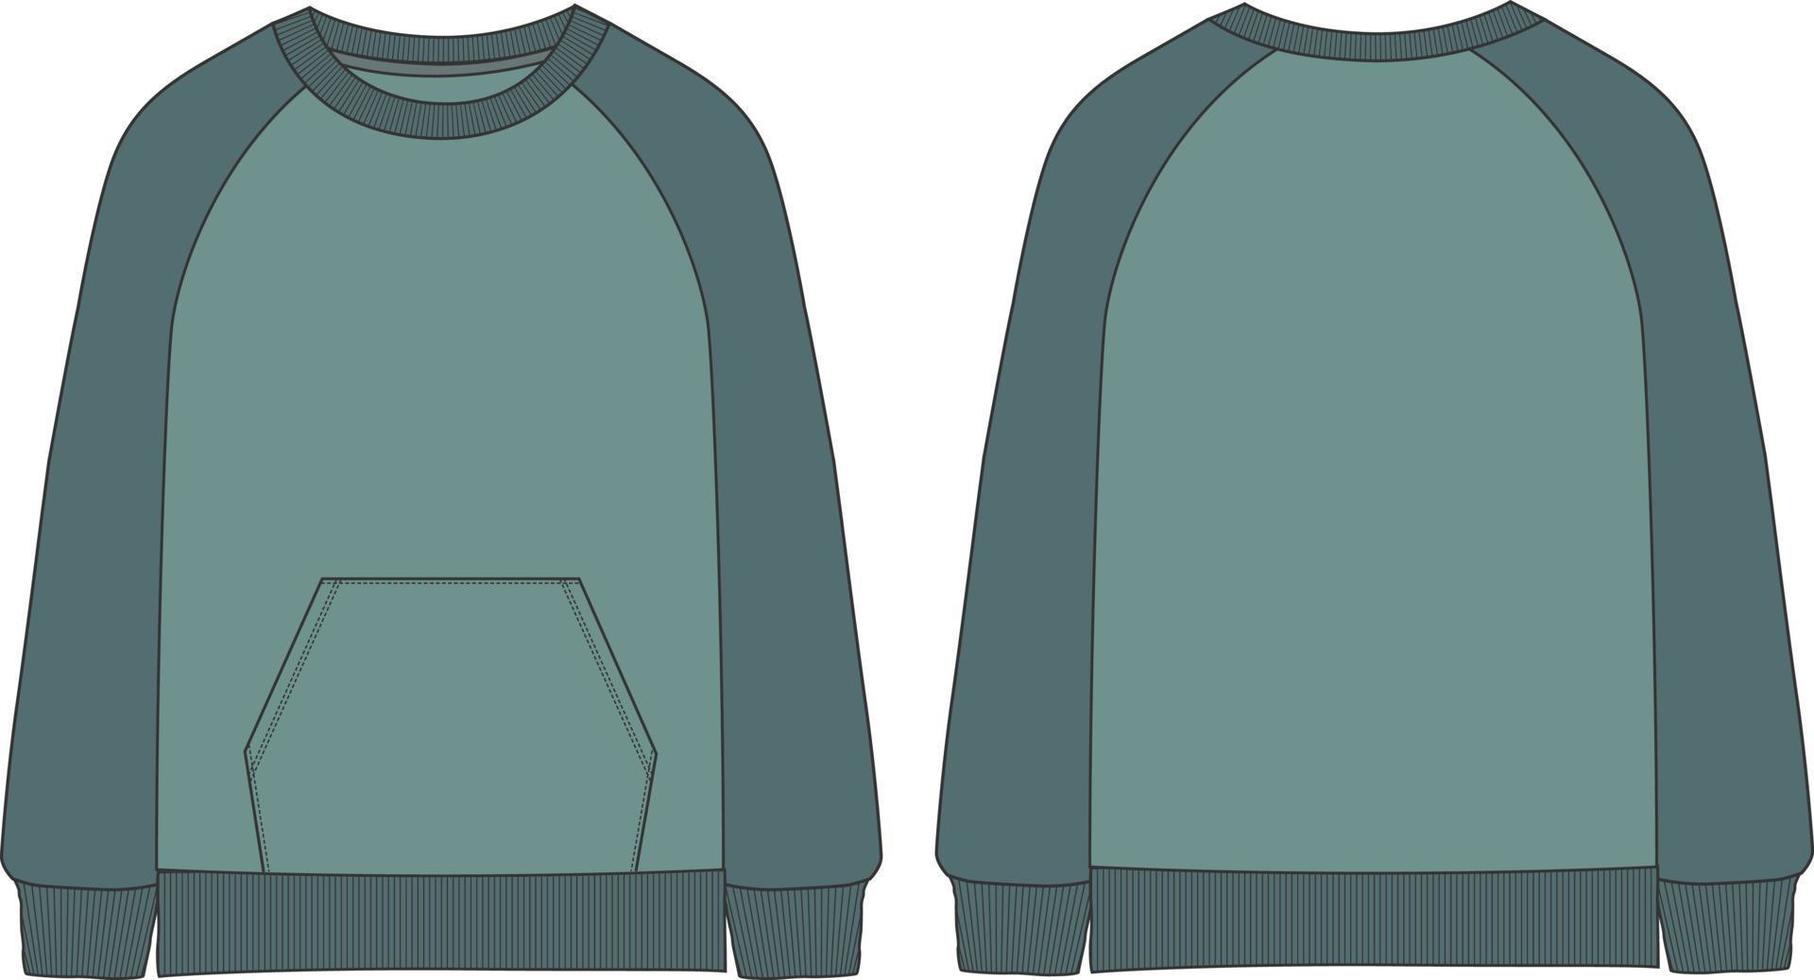 jersey de coton bicolore, manches longues, encolure ronde avec poche vecteur de croquis plat de mode technique maquette modèles avant et arrière isolés sur fond blanc.